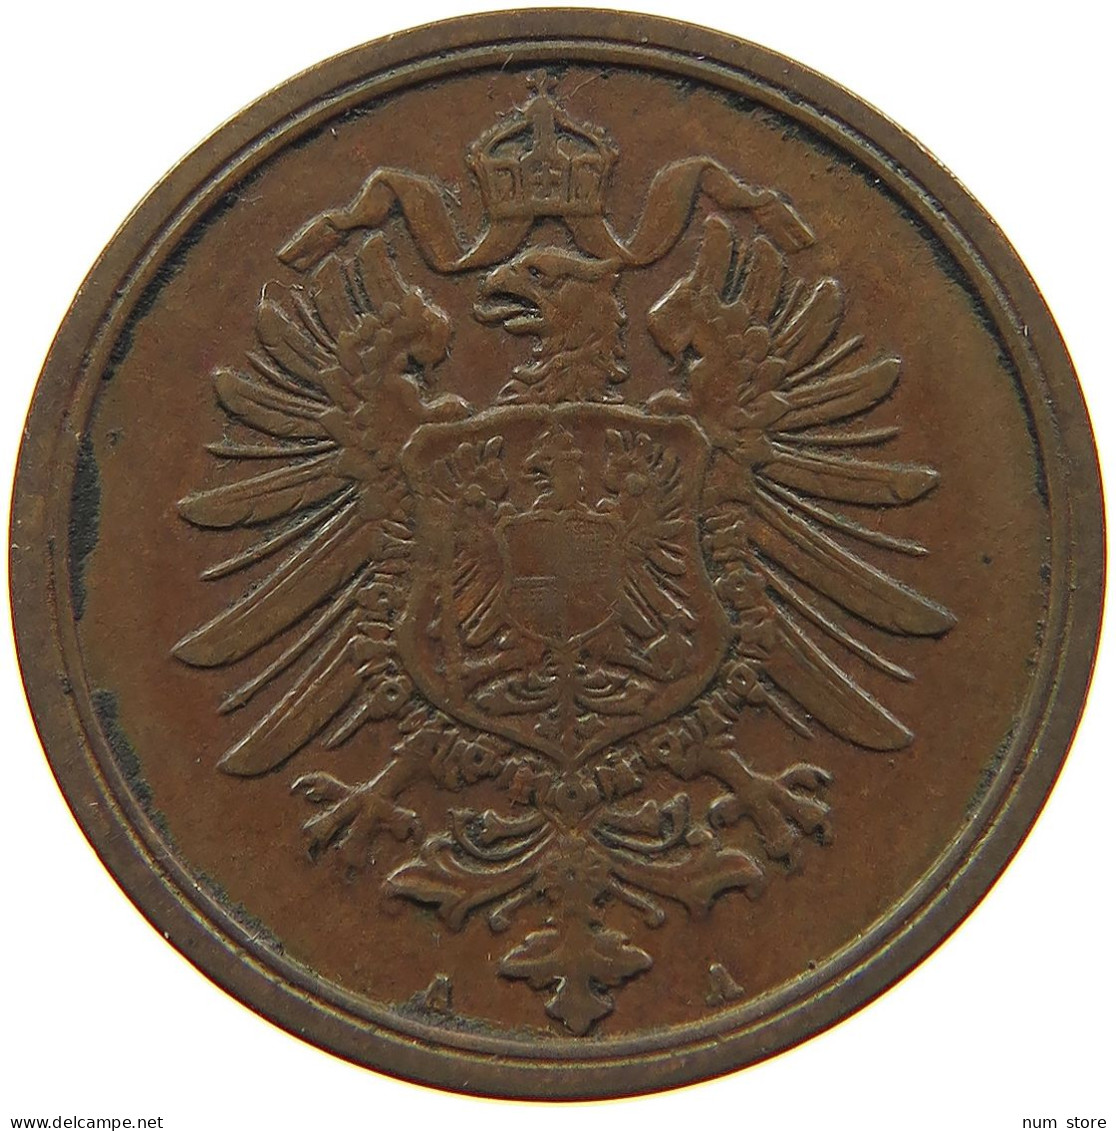 GERMANY EMPIRE 2 PFENNIG 1875 A #s083 0601 - 2 Pfennig